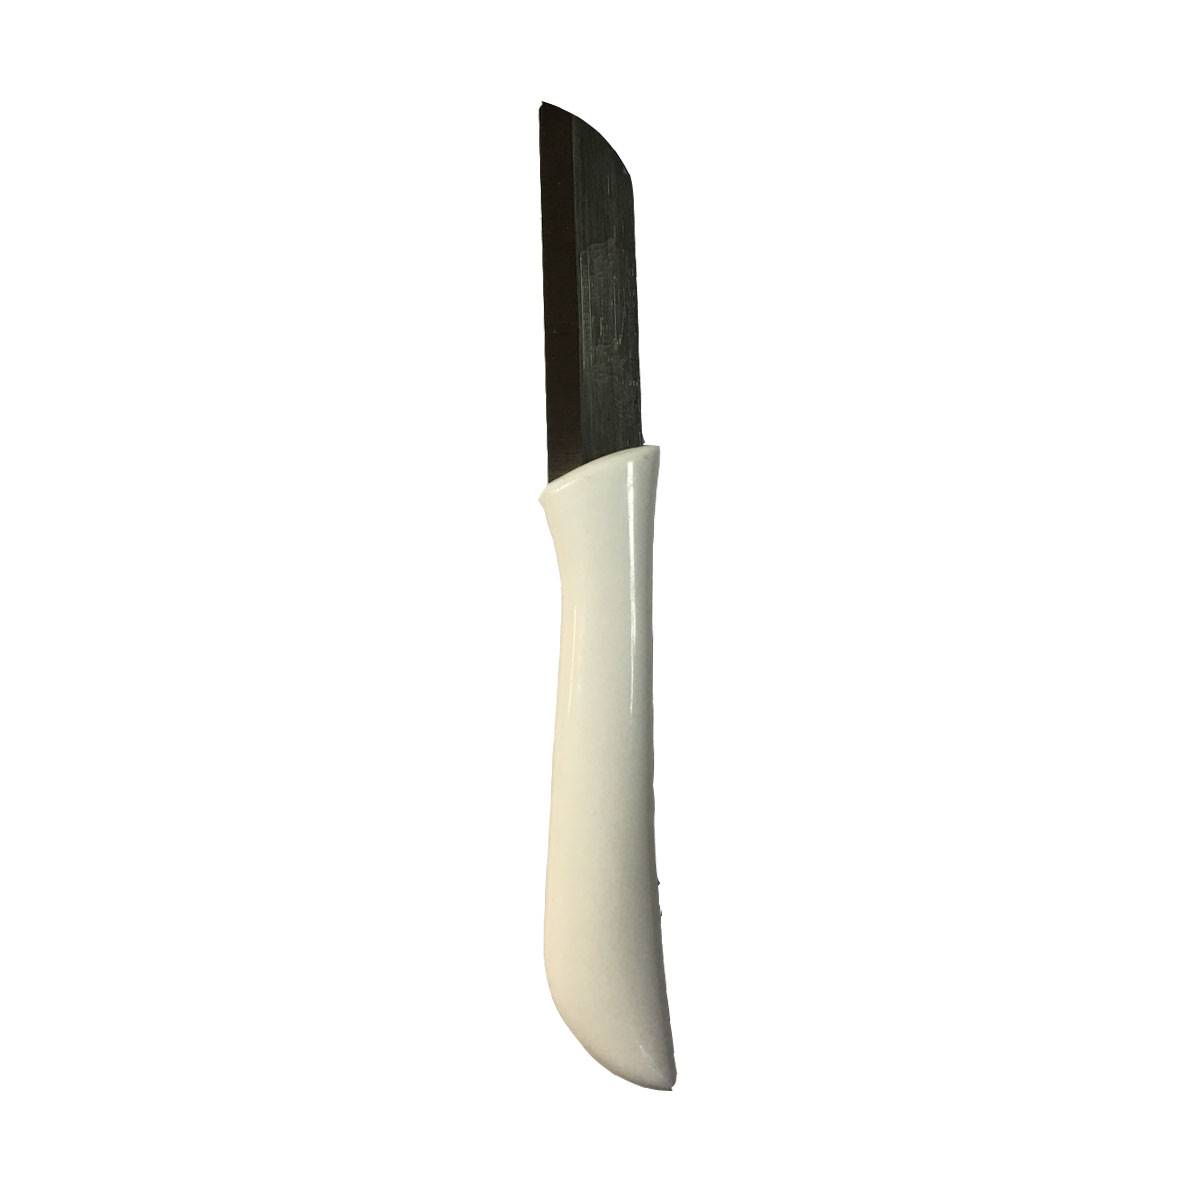 کارد میوه خوری فاردینوکس مدل HM-15Fruit knives of solingen Gremany fardinox